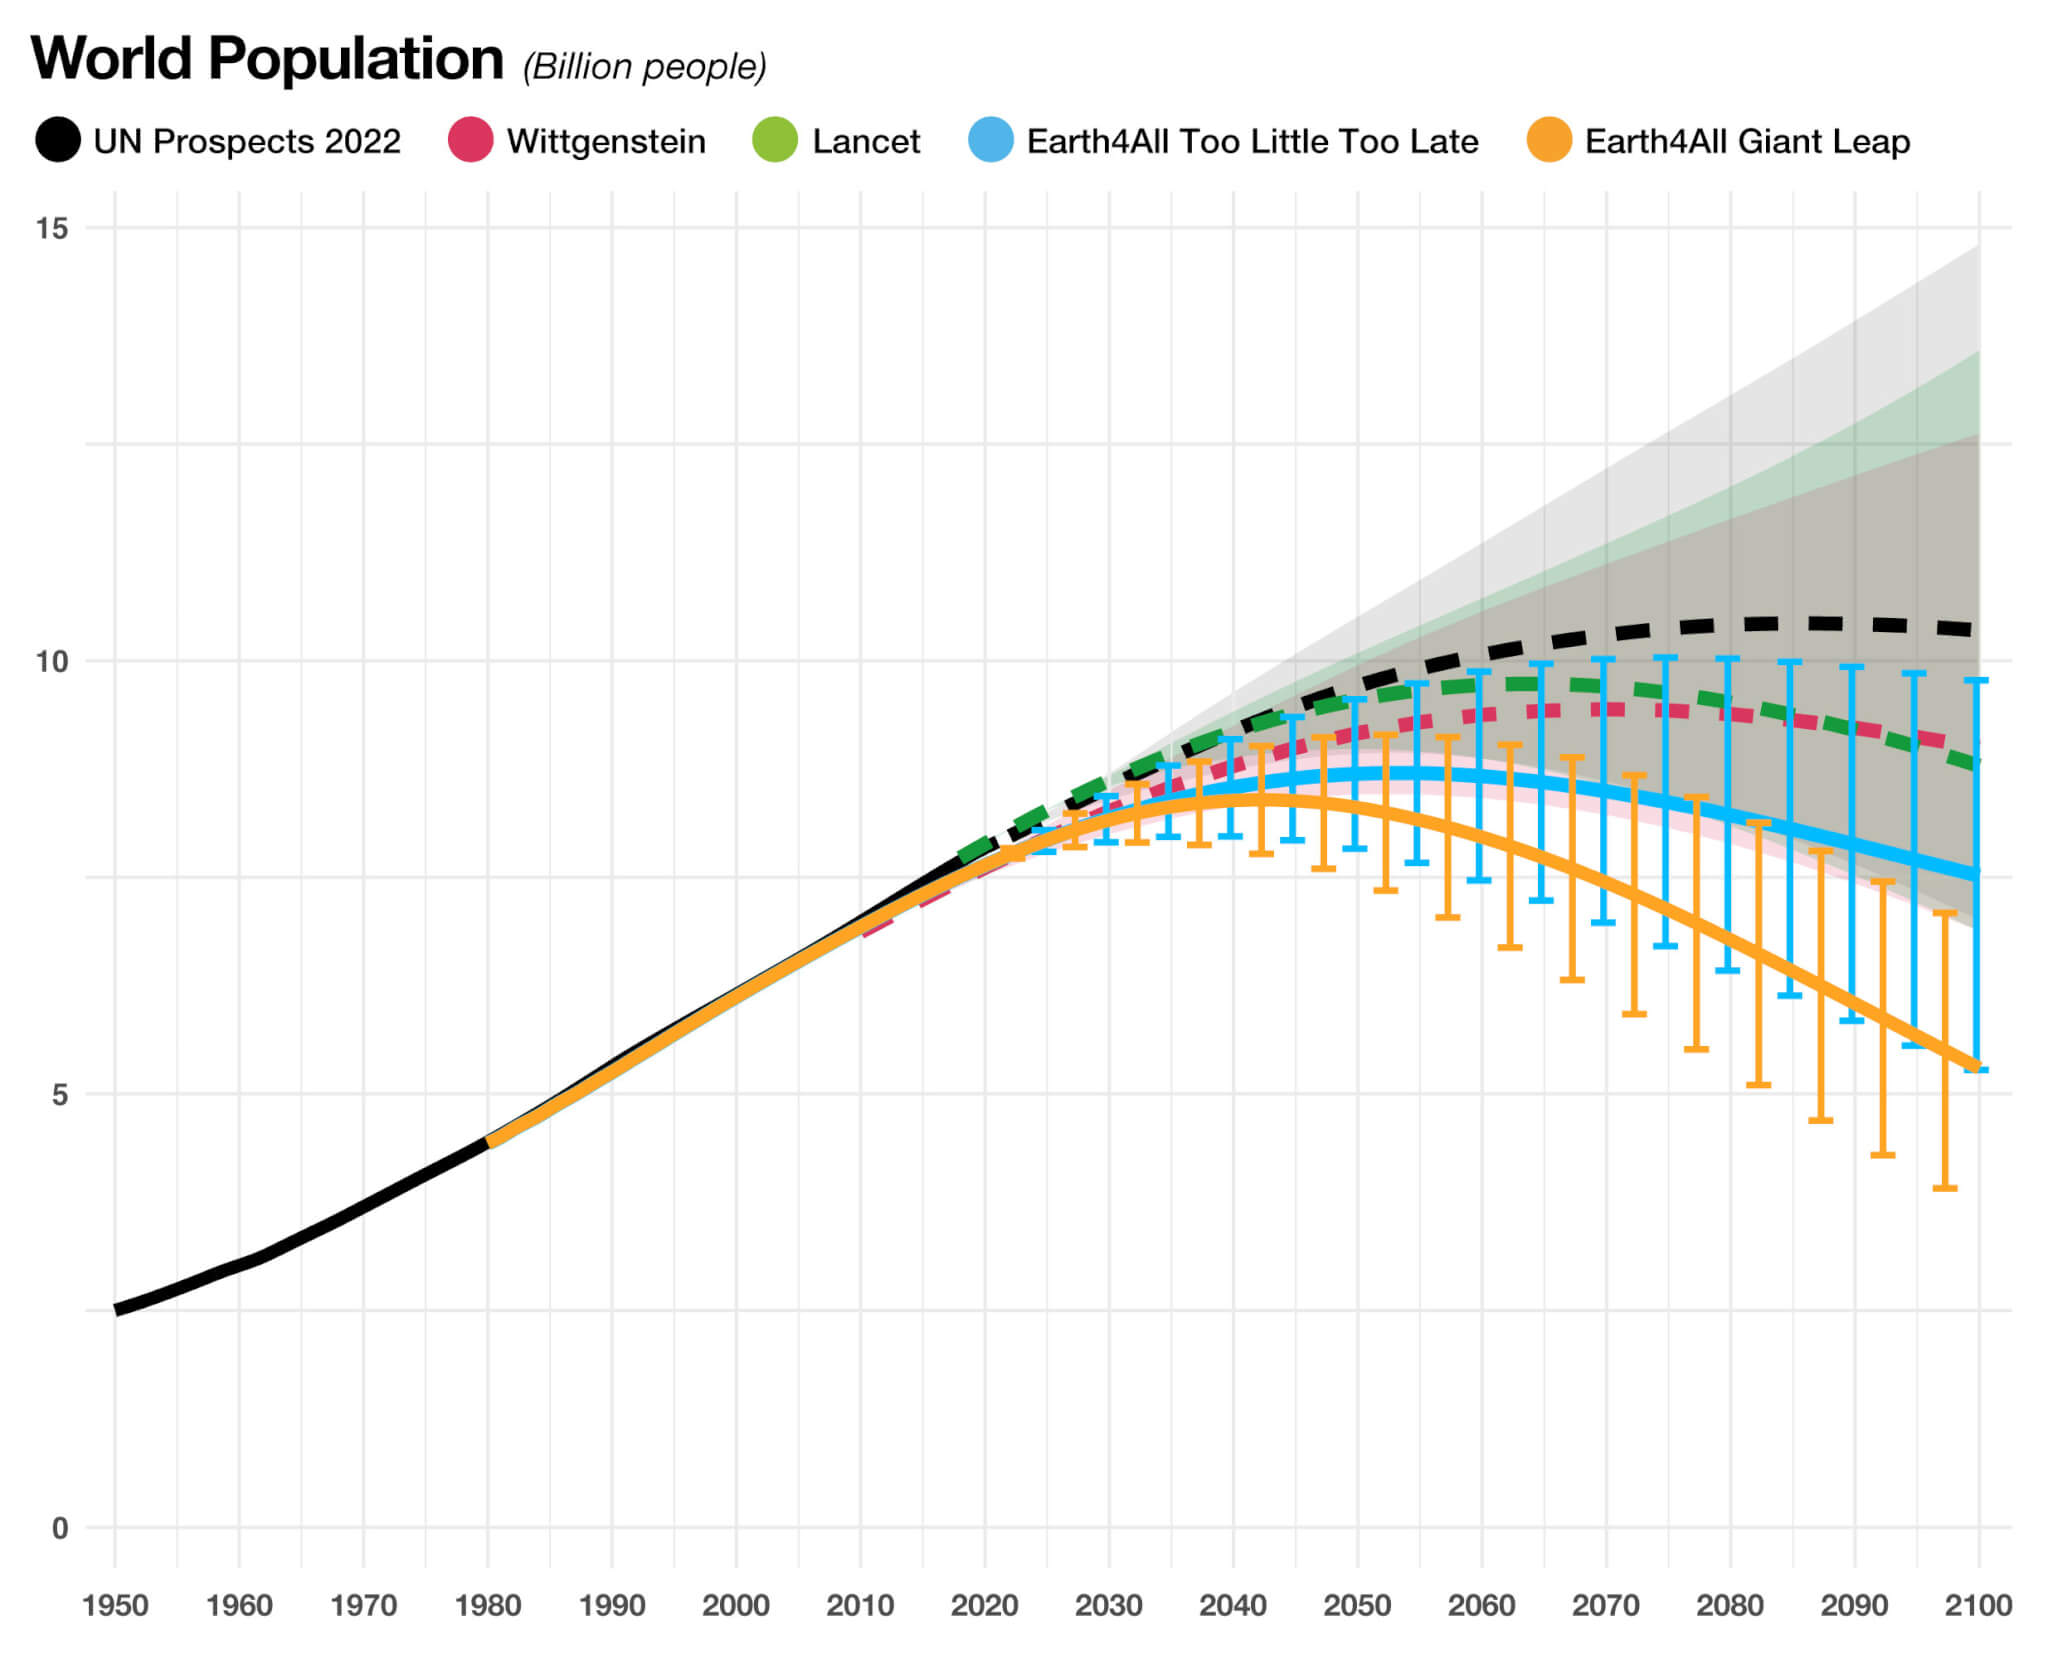 Comparing five population scenarios to 2100